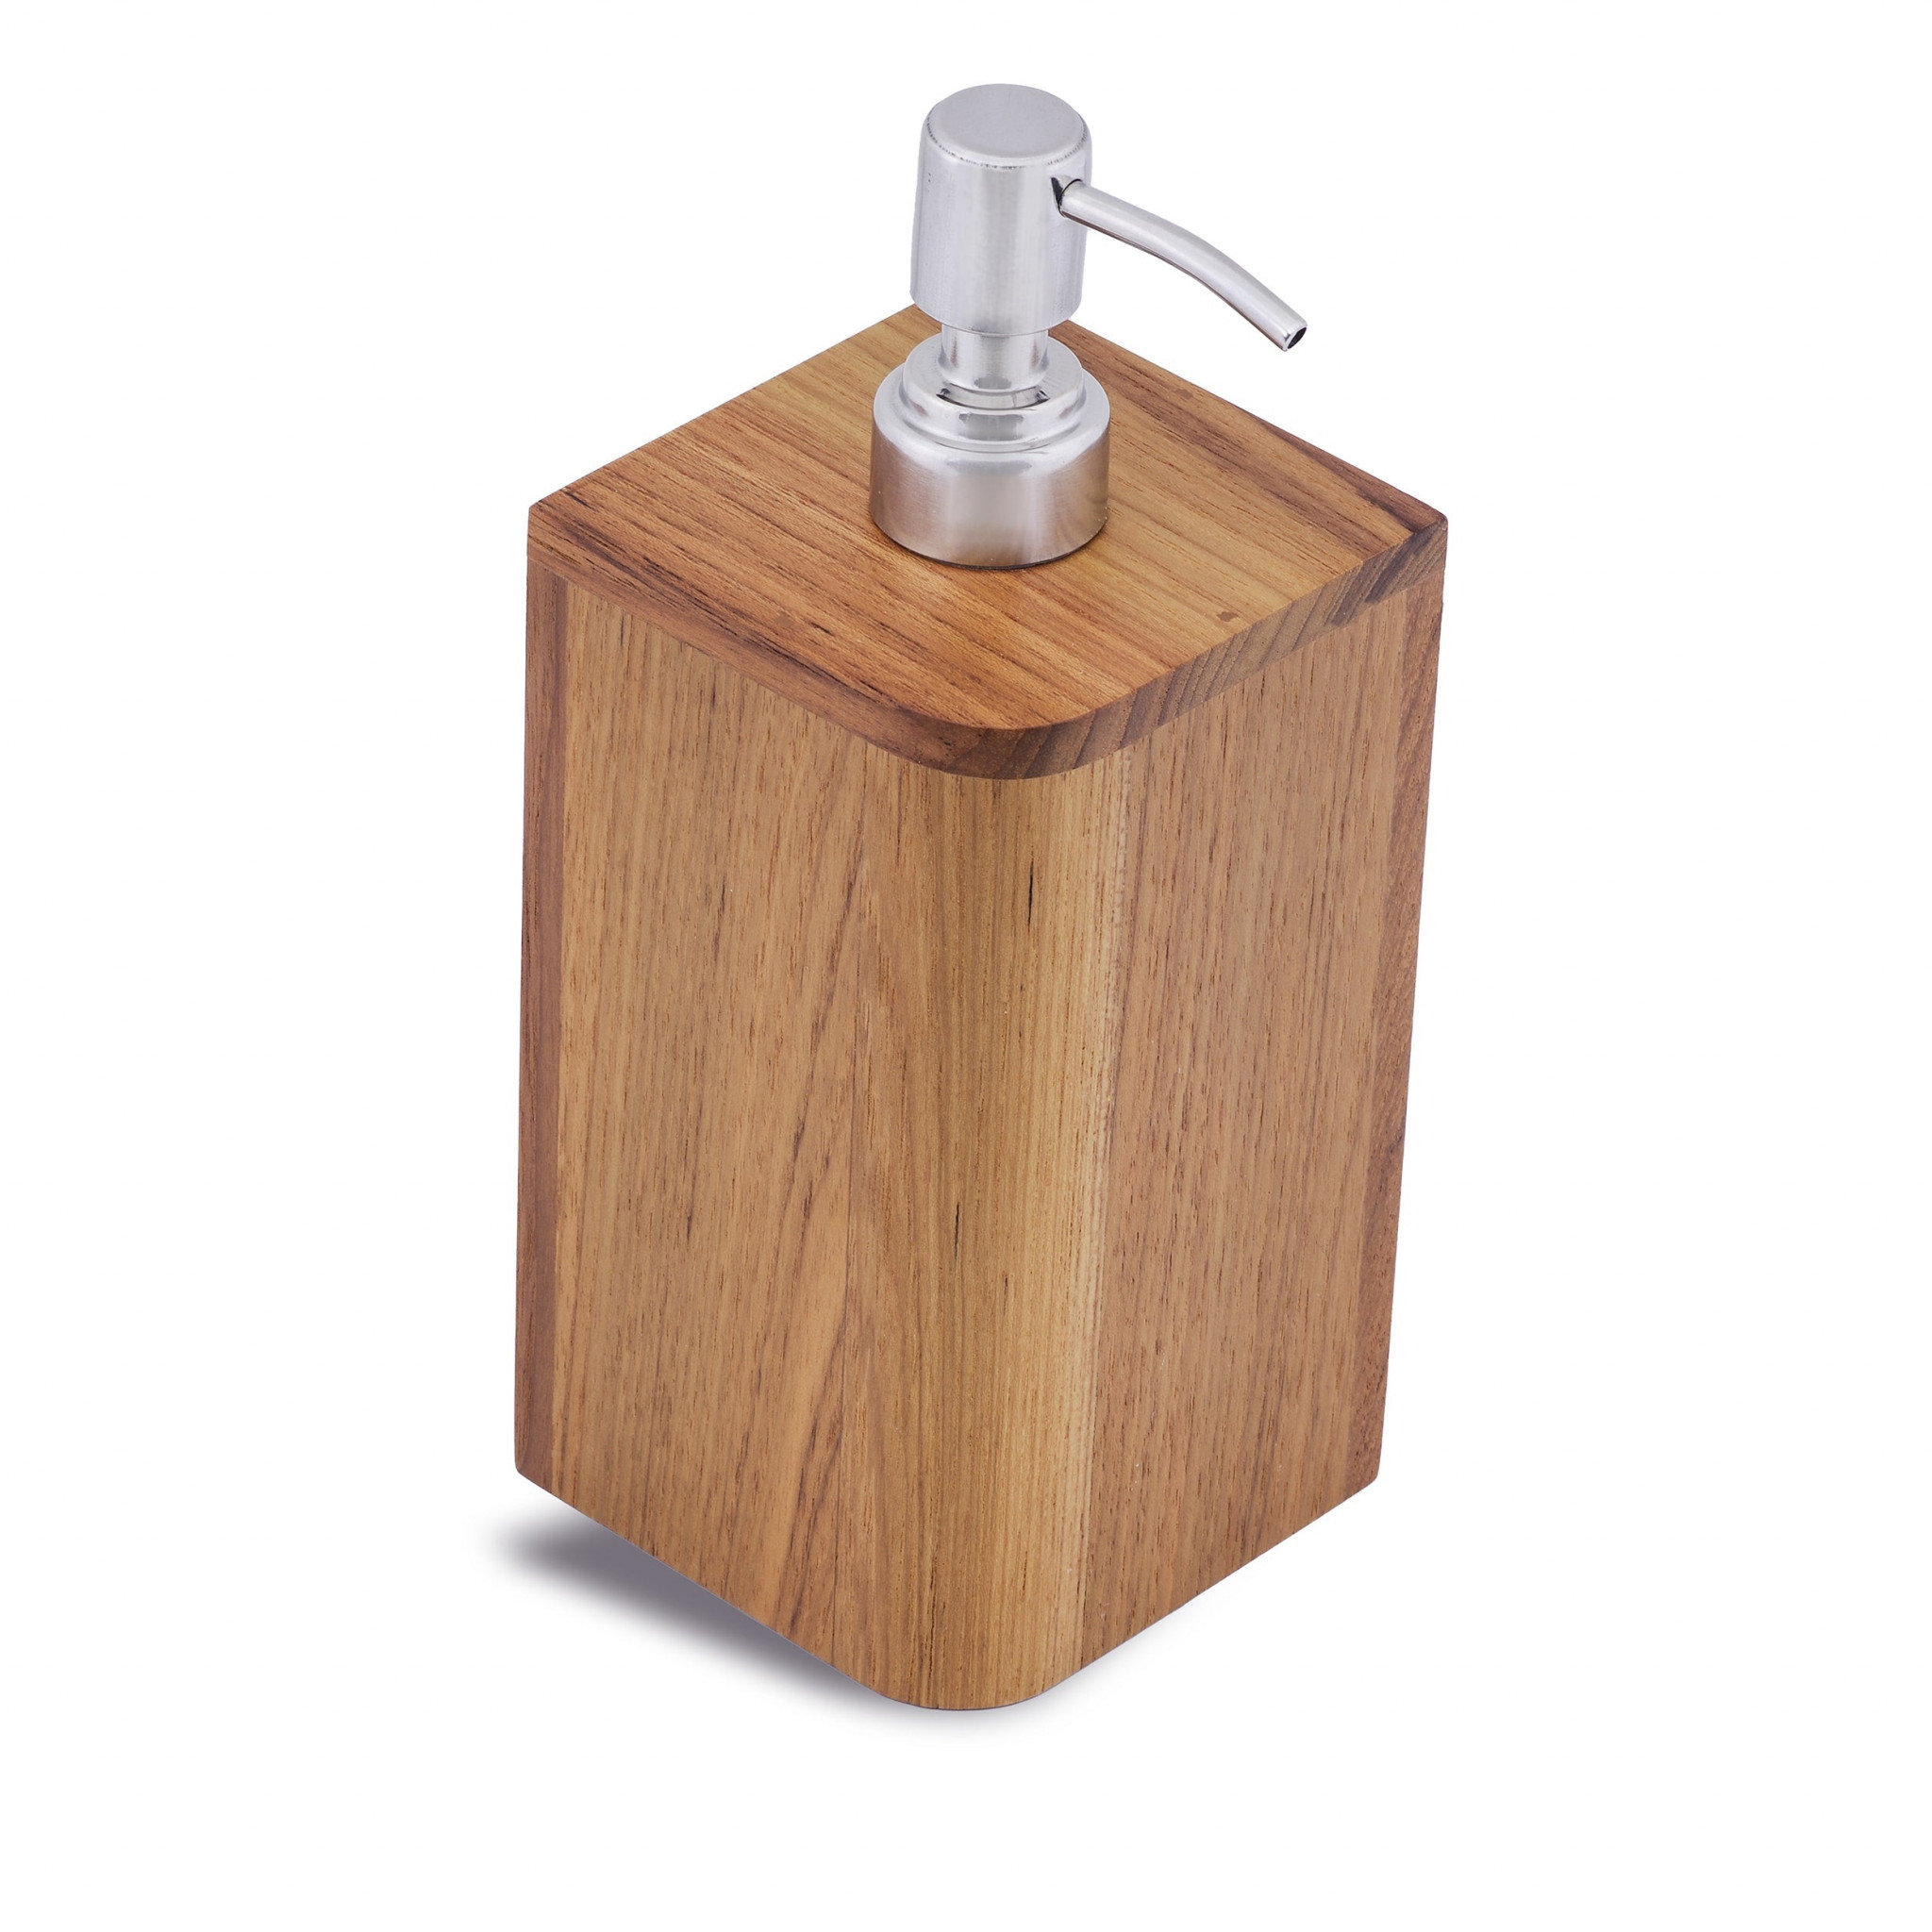 Grove Tray | Mango Wood Soap Dispenser Tray